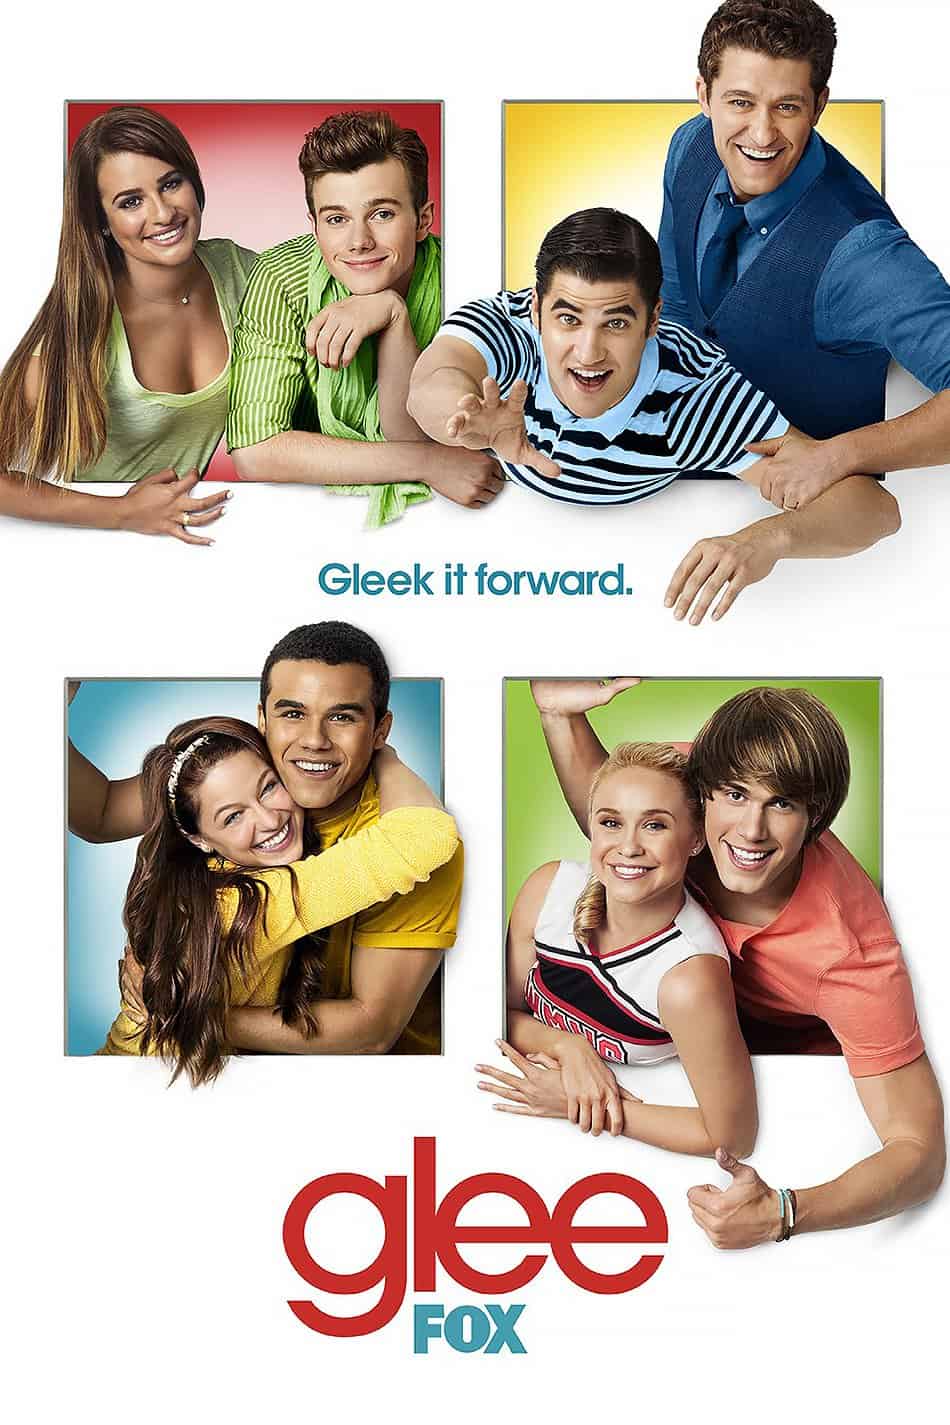 Glee, 2009 